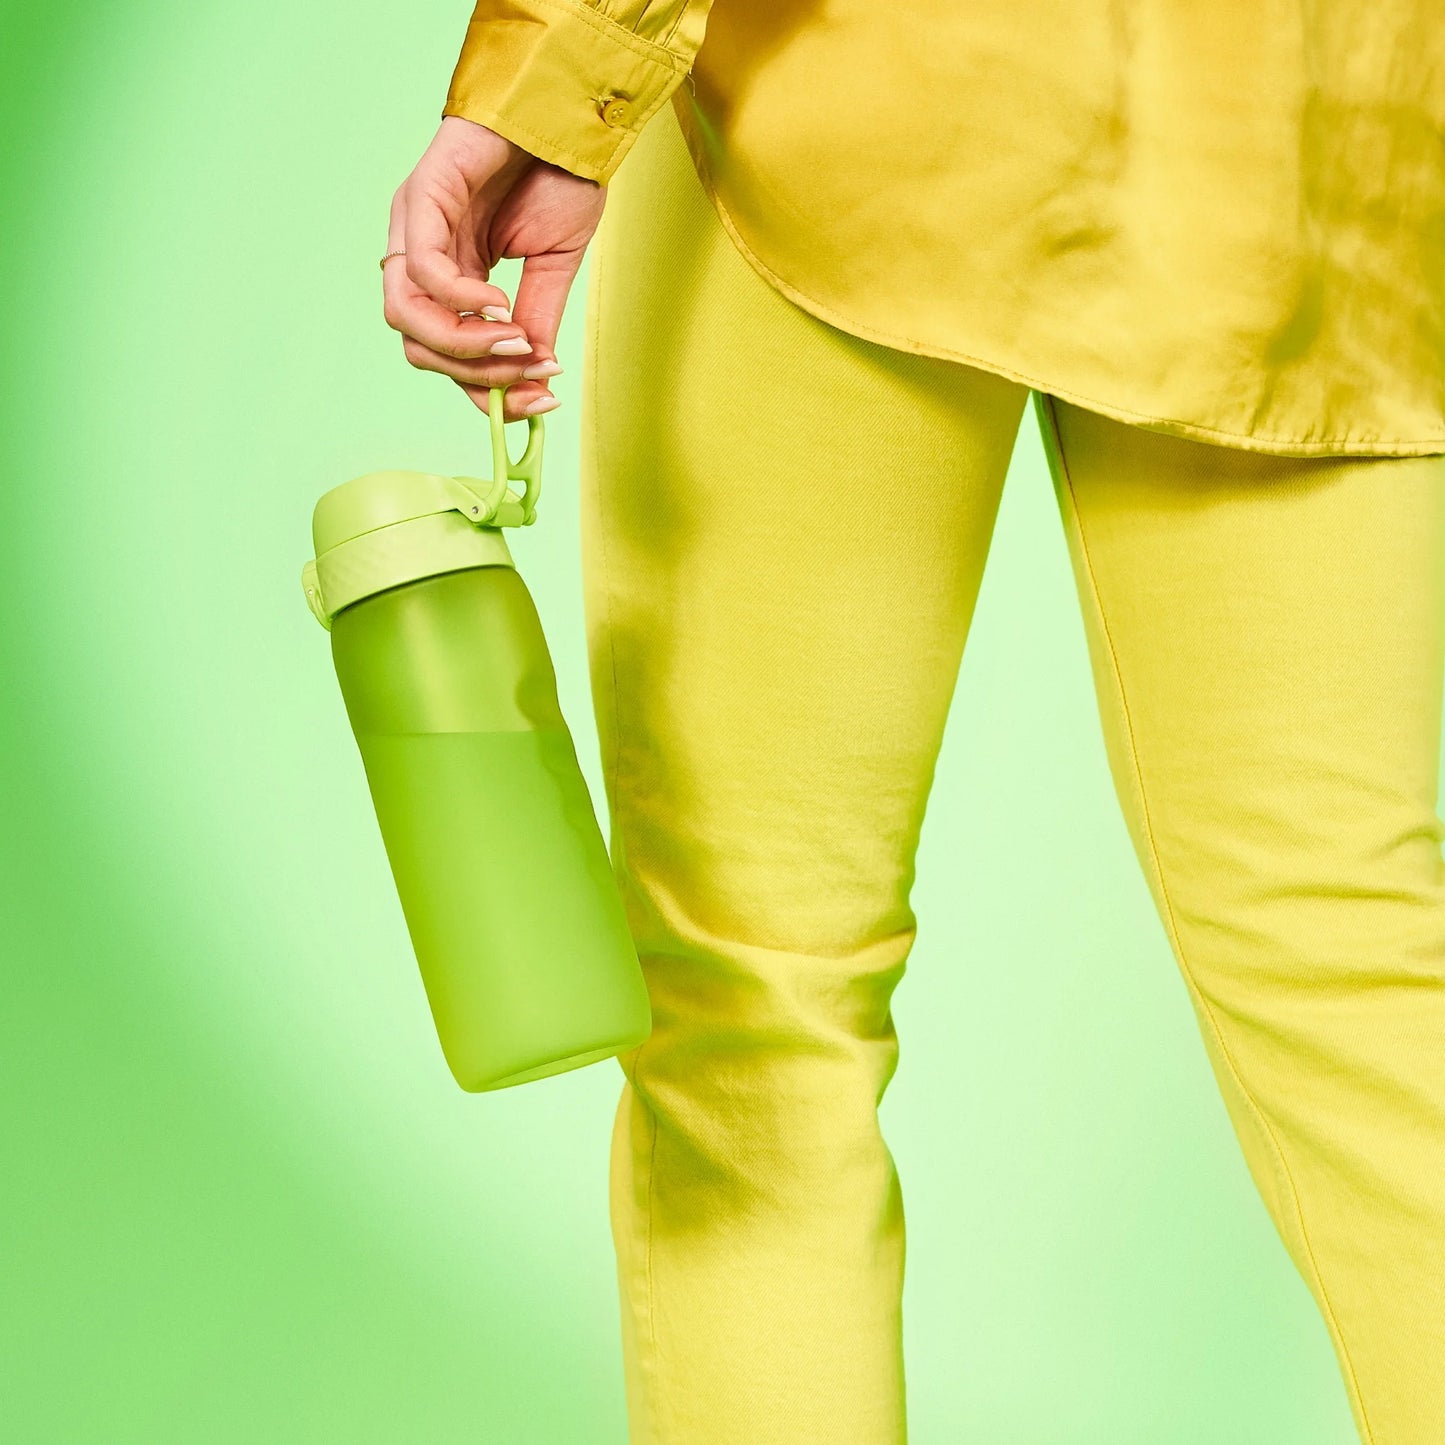 Leak Proof Water Bottle, Recyclon™, Green, 750ml (24oz)